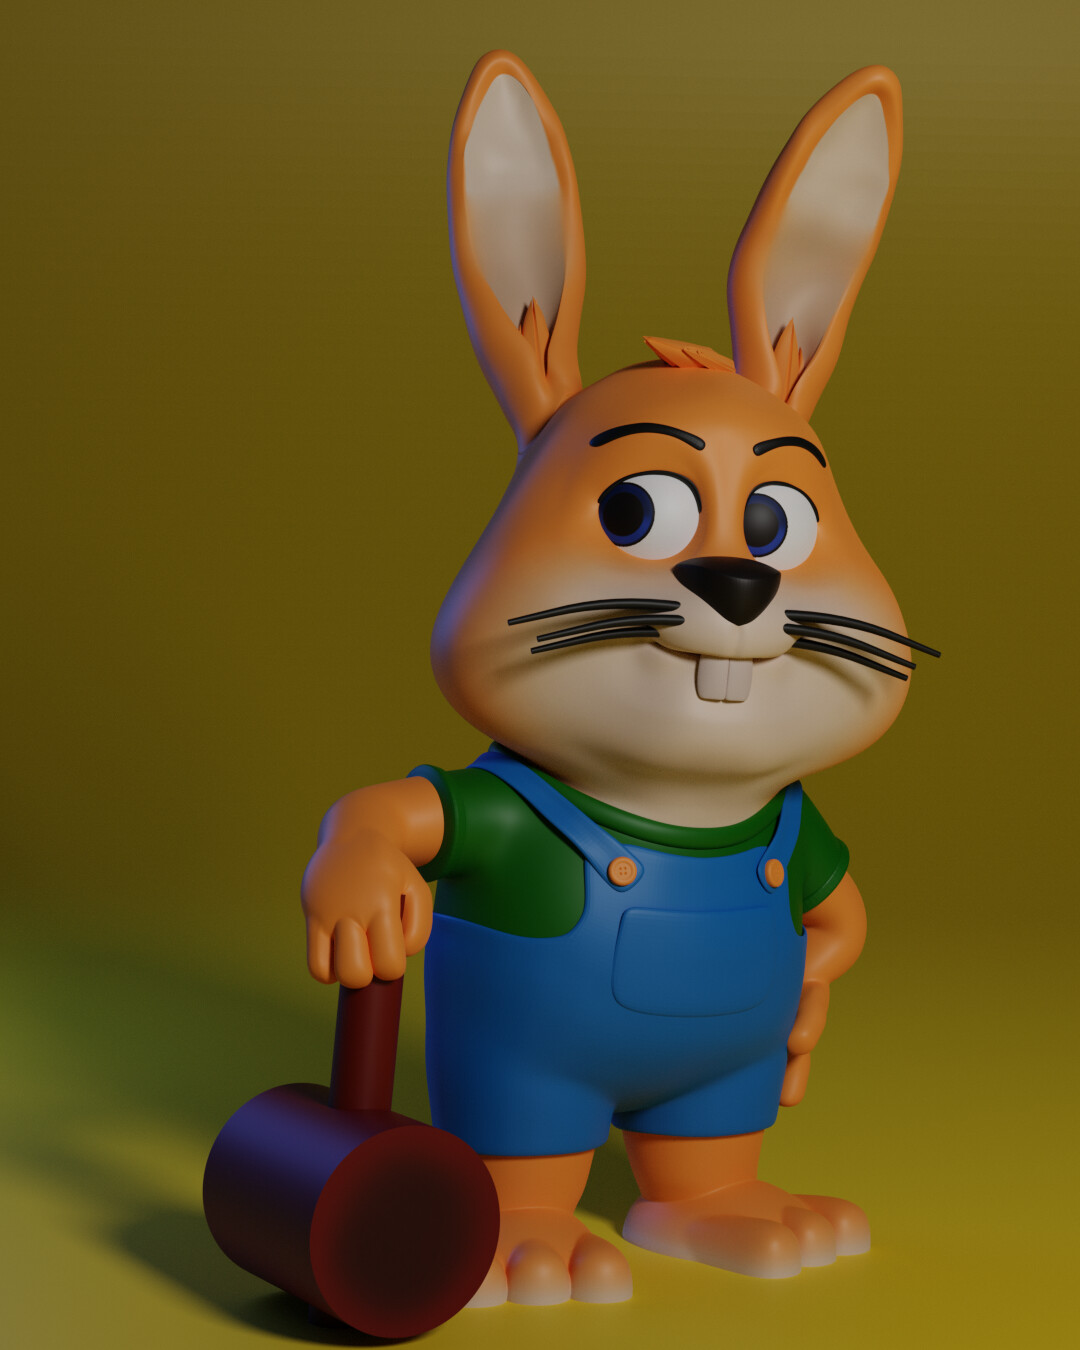 ArtStation - Little rabbit foo foo